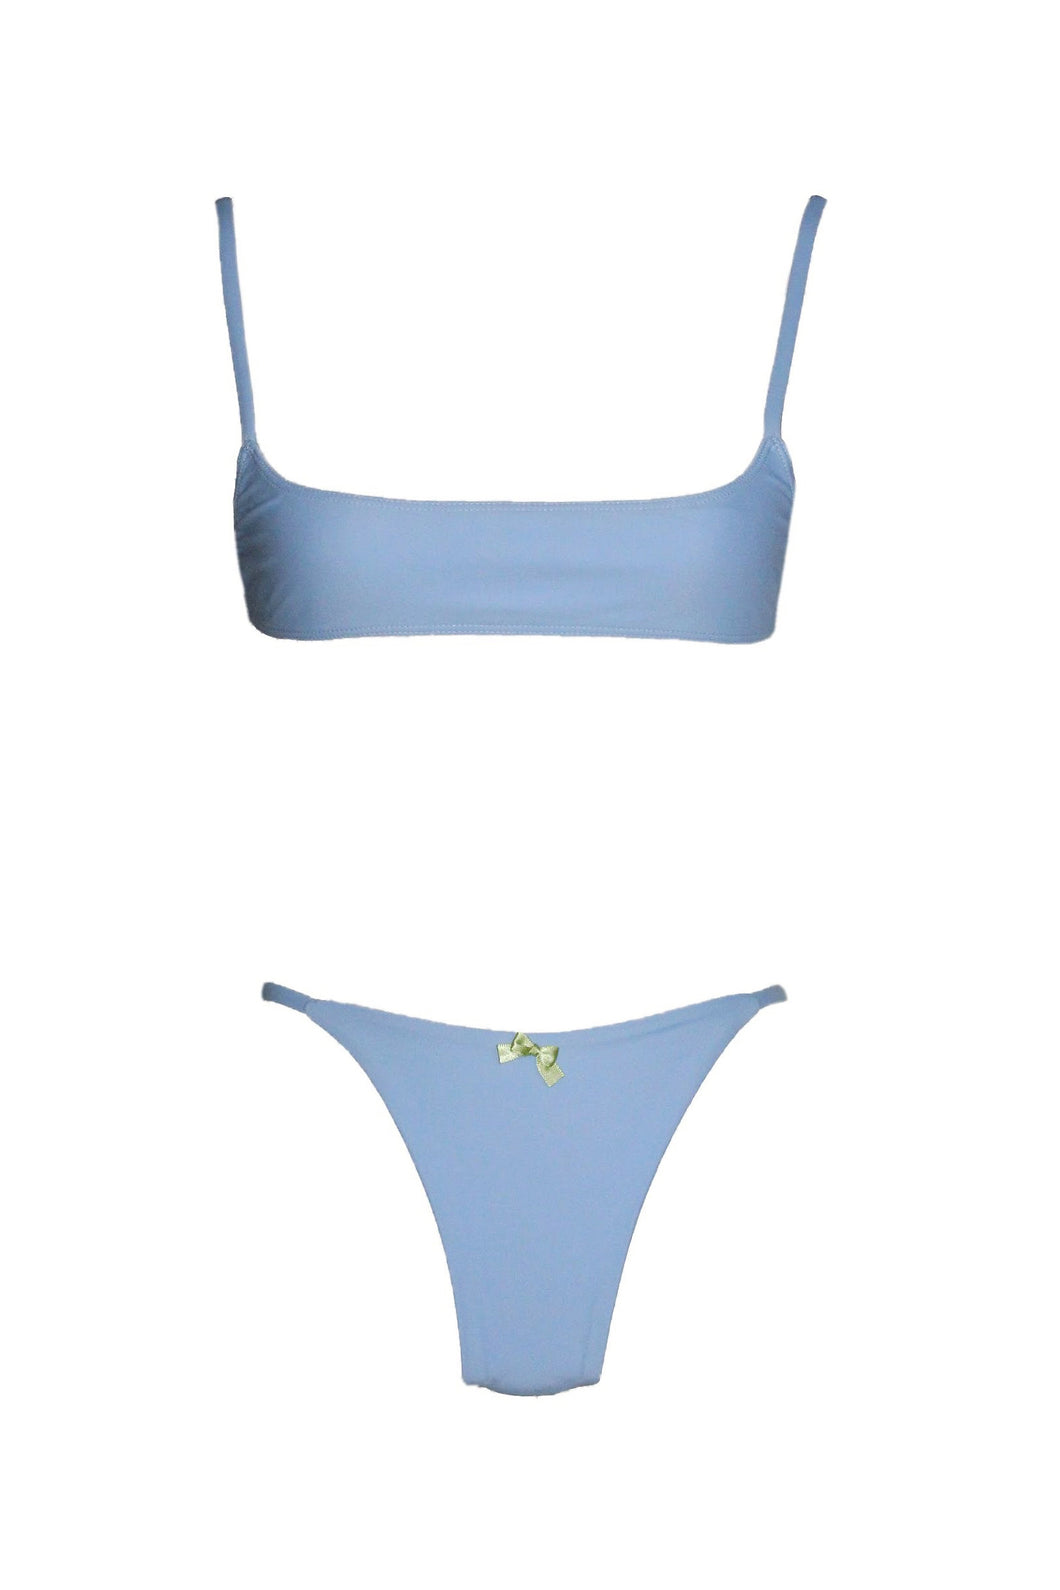 Baby blue sports bra bikini top by swimwear company.